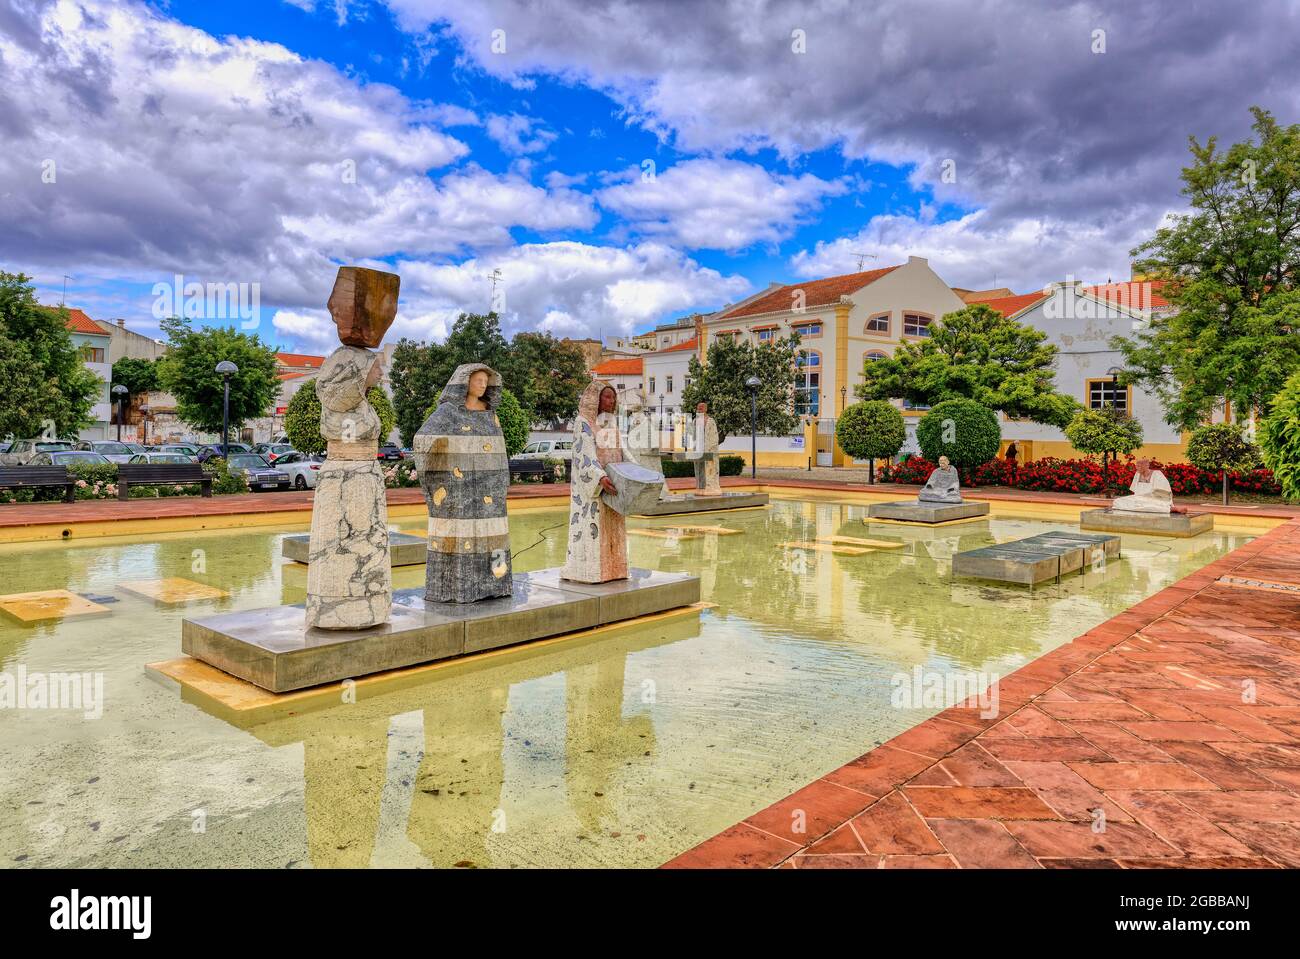 Piazza al Muthamid con fontane e sculture moderne, Silves, Algarve, Portogallo, Europa Foto Stock